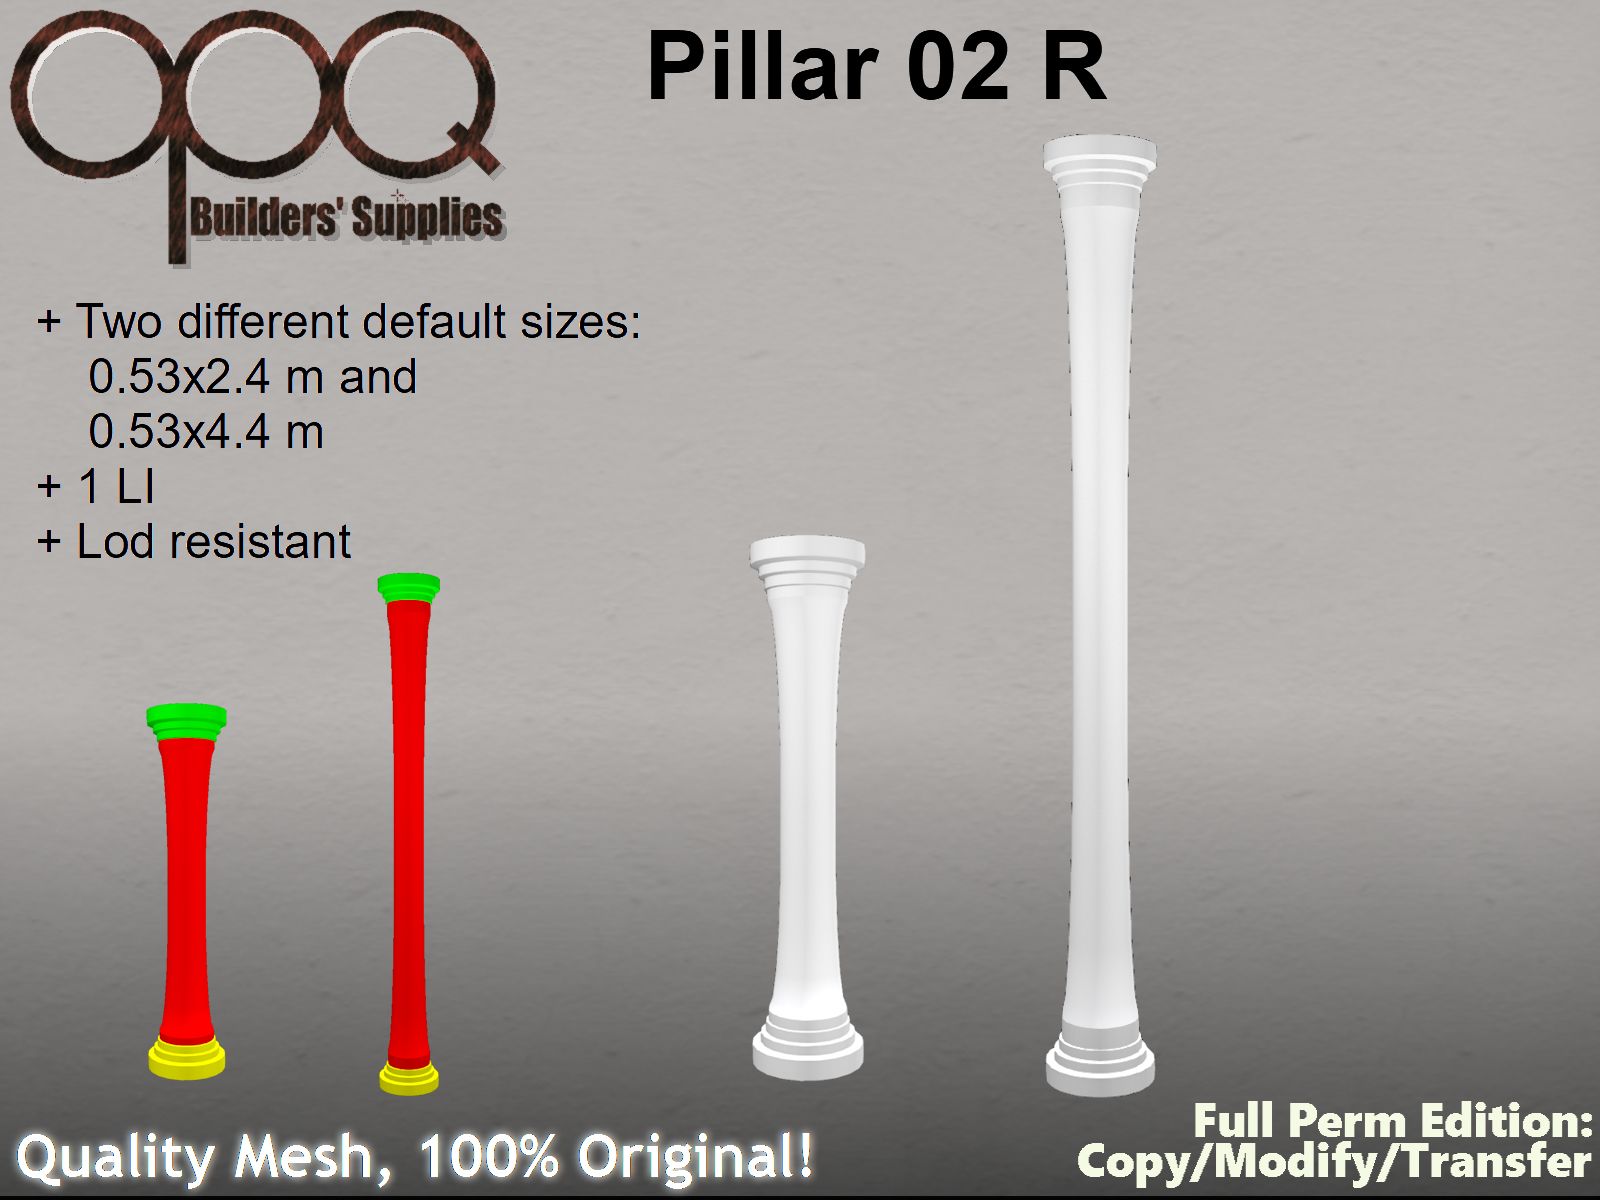 OPQ Pillar 02 R Poster.jpg